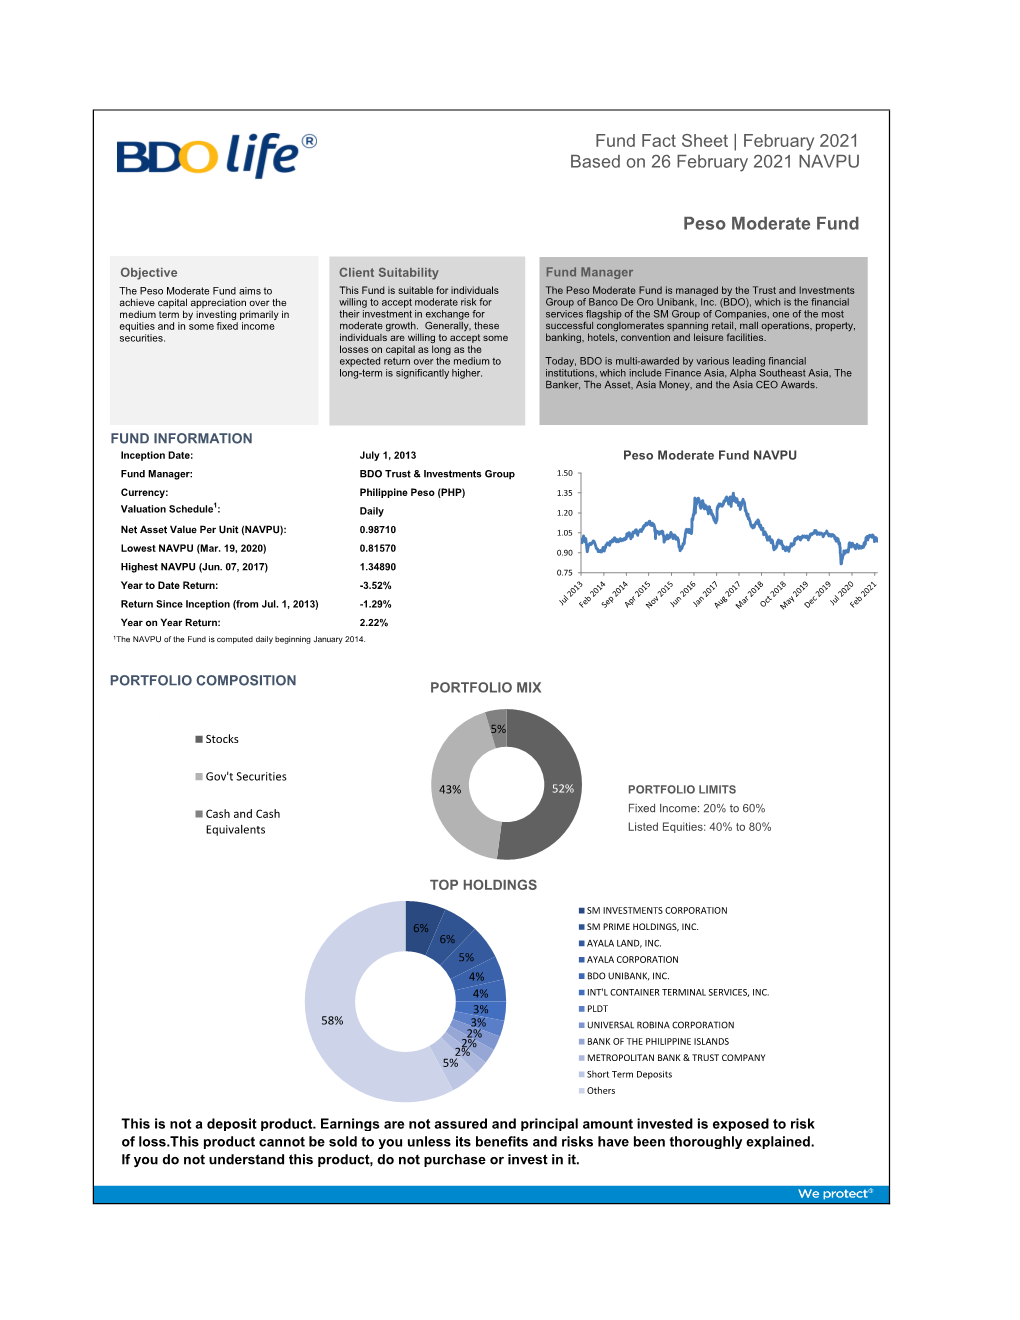 Fund Fact Sheet | February 2021 Based on 26 February 2021 NAVPU